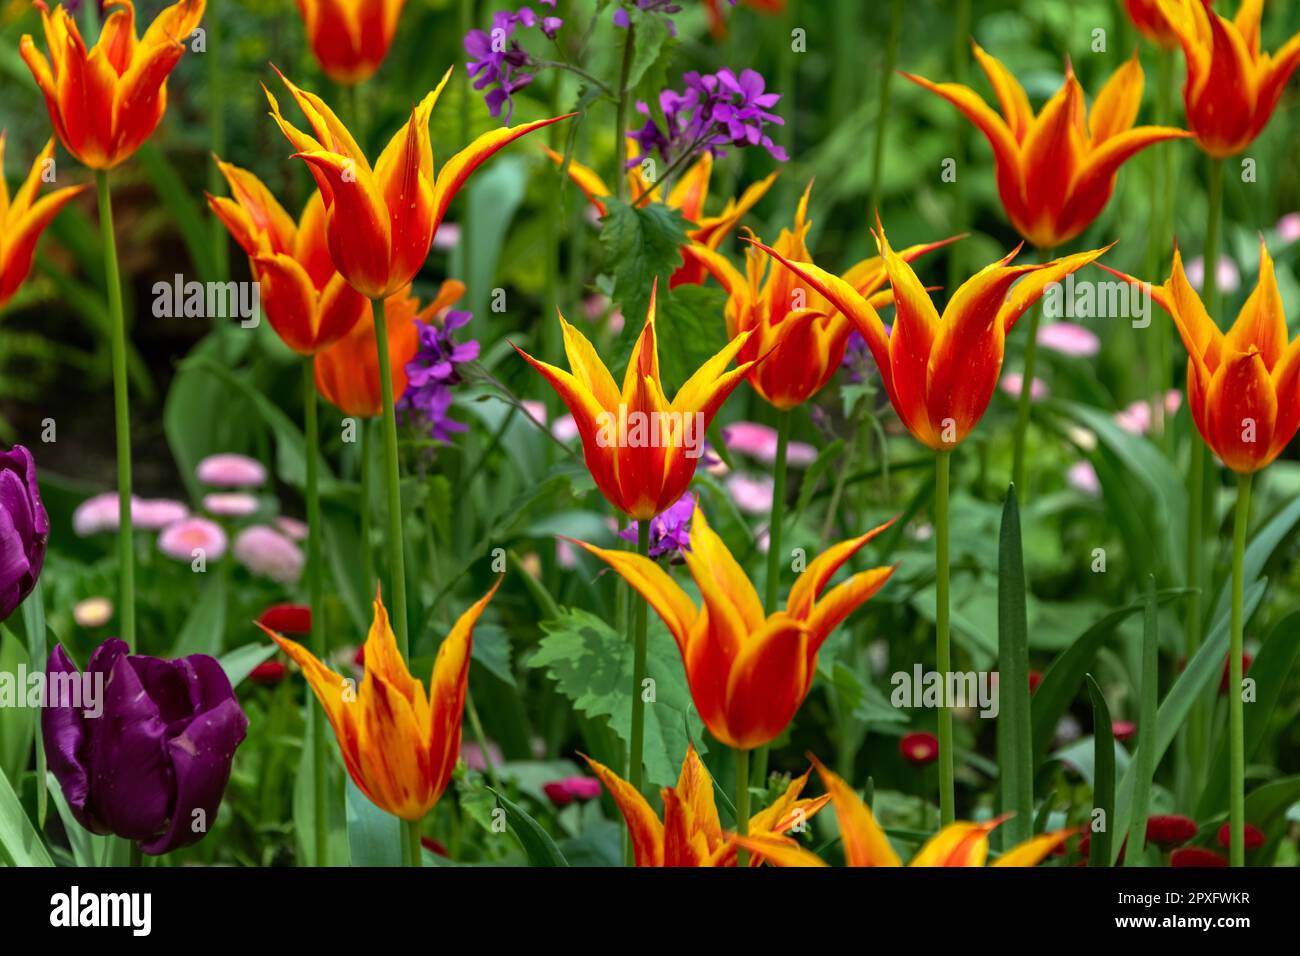 Exposition de tulipes colorées, St. James's Park, Londres, Royaume-Uni Banque D'Images